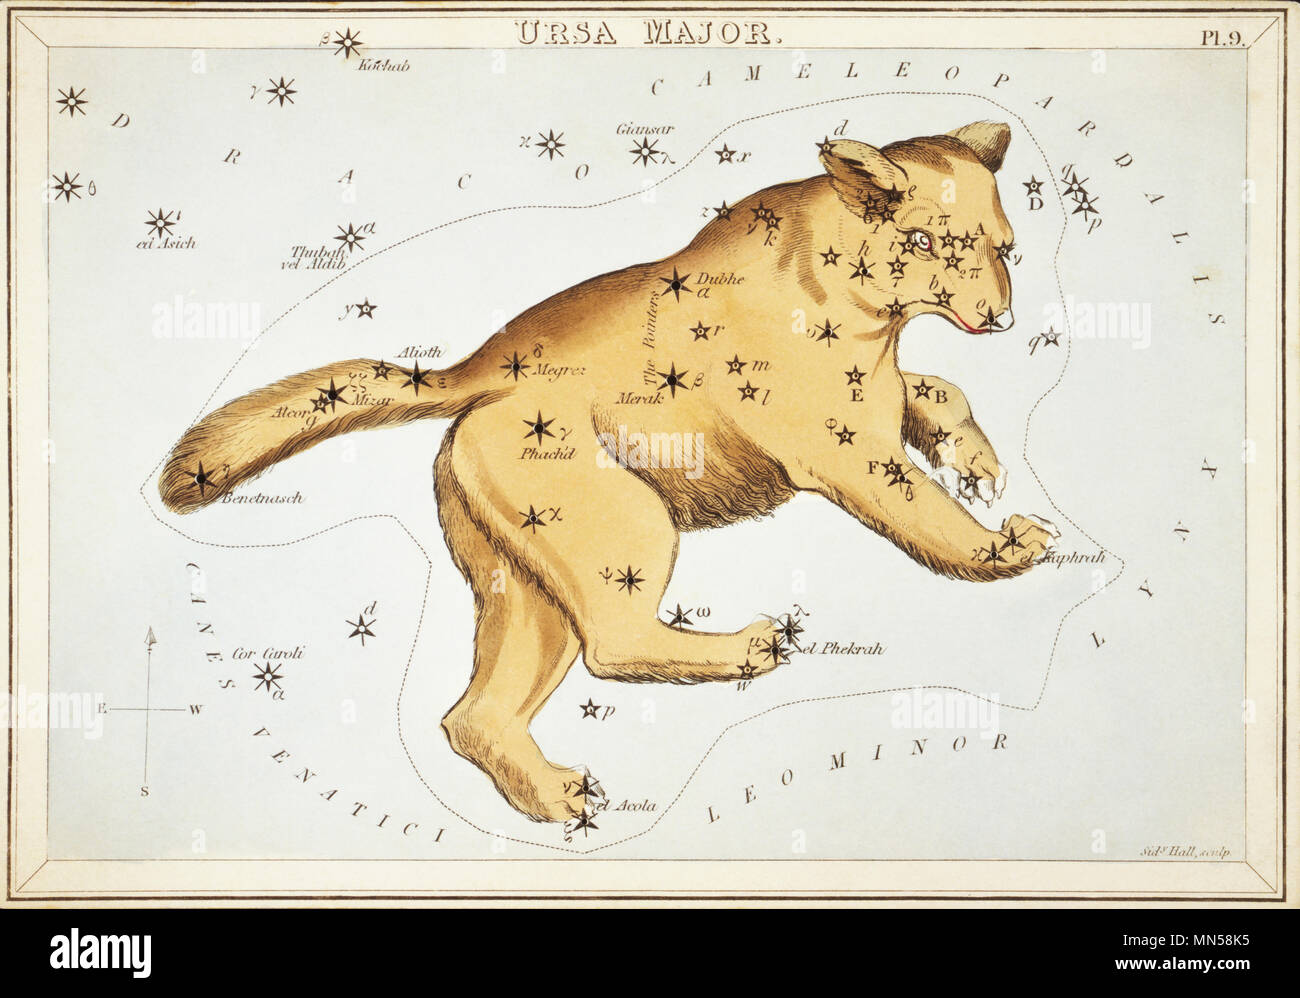 Ursa Major. Karte Nummer 9 von Urania's Mirror, oder einen Blick auf den Himmel, eines der 32 astronomischen Star Chart Karten von Sidney Hall graviert und publshed 1824. Stockfoto